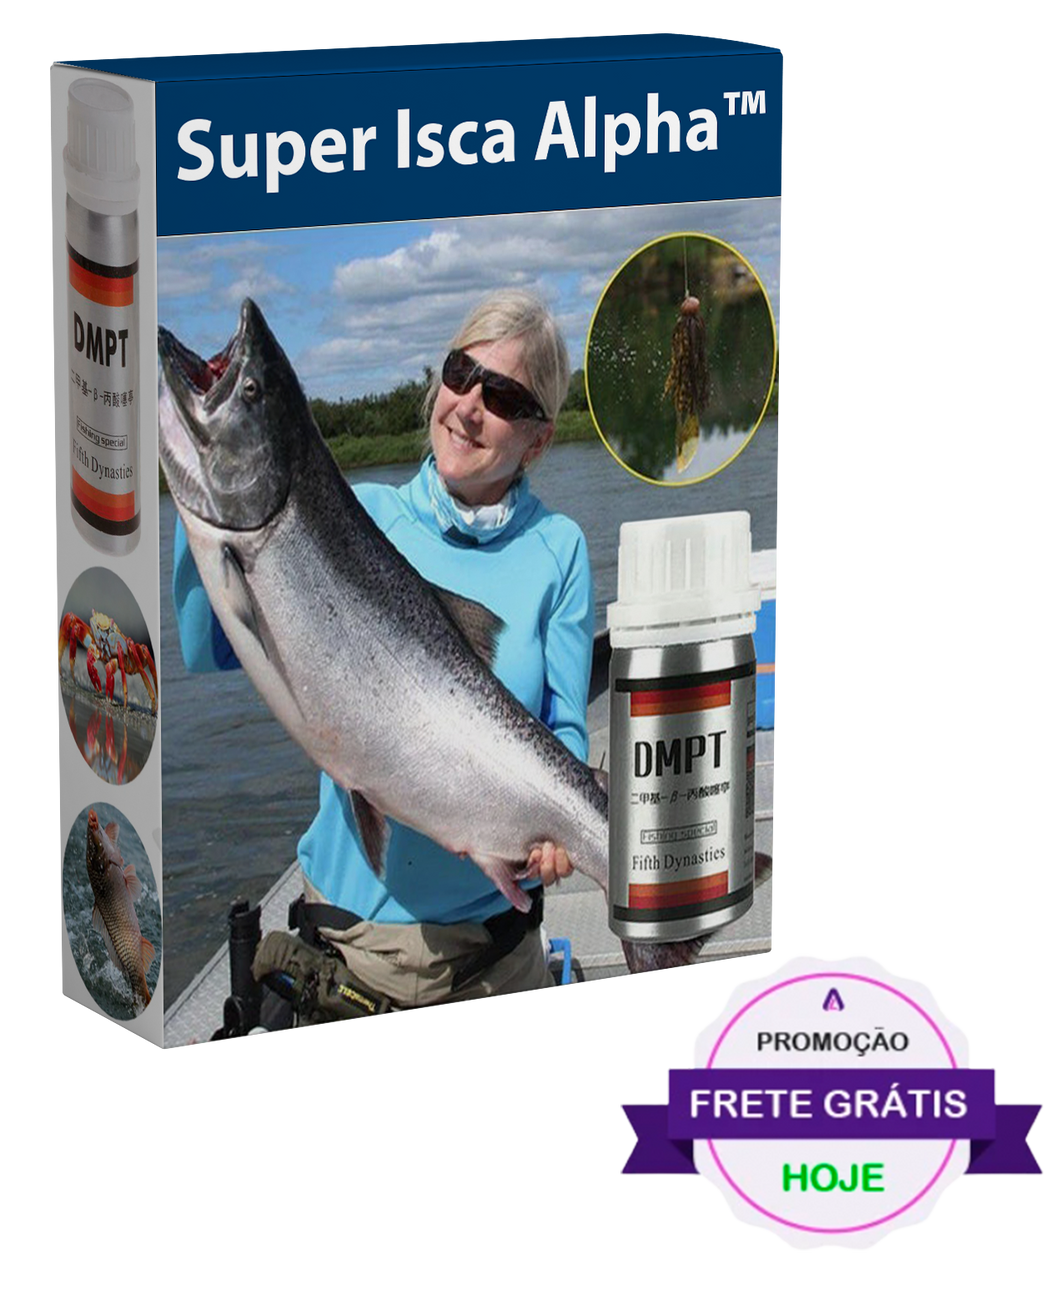 Super Isca Alpha™ - Oferta